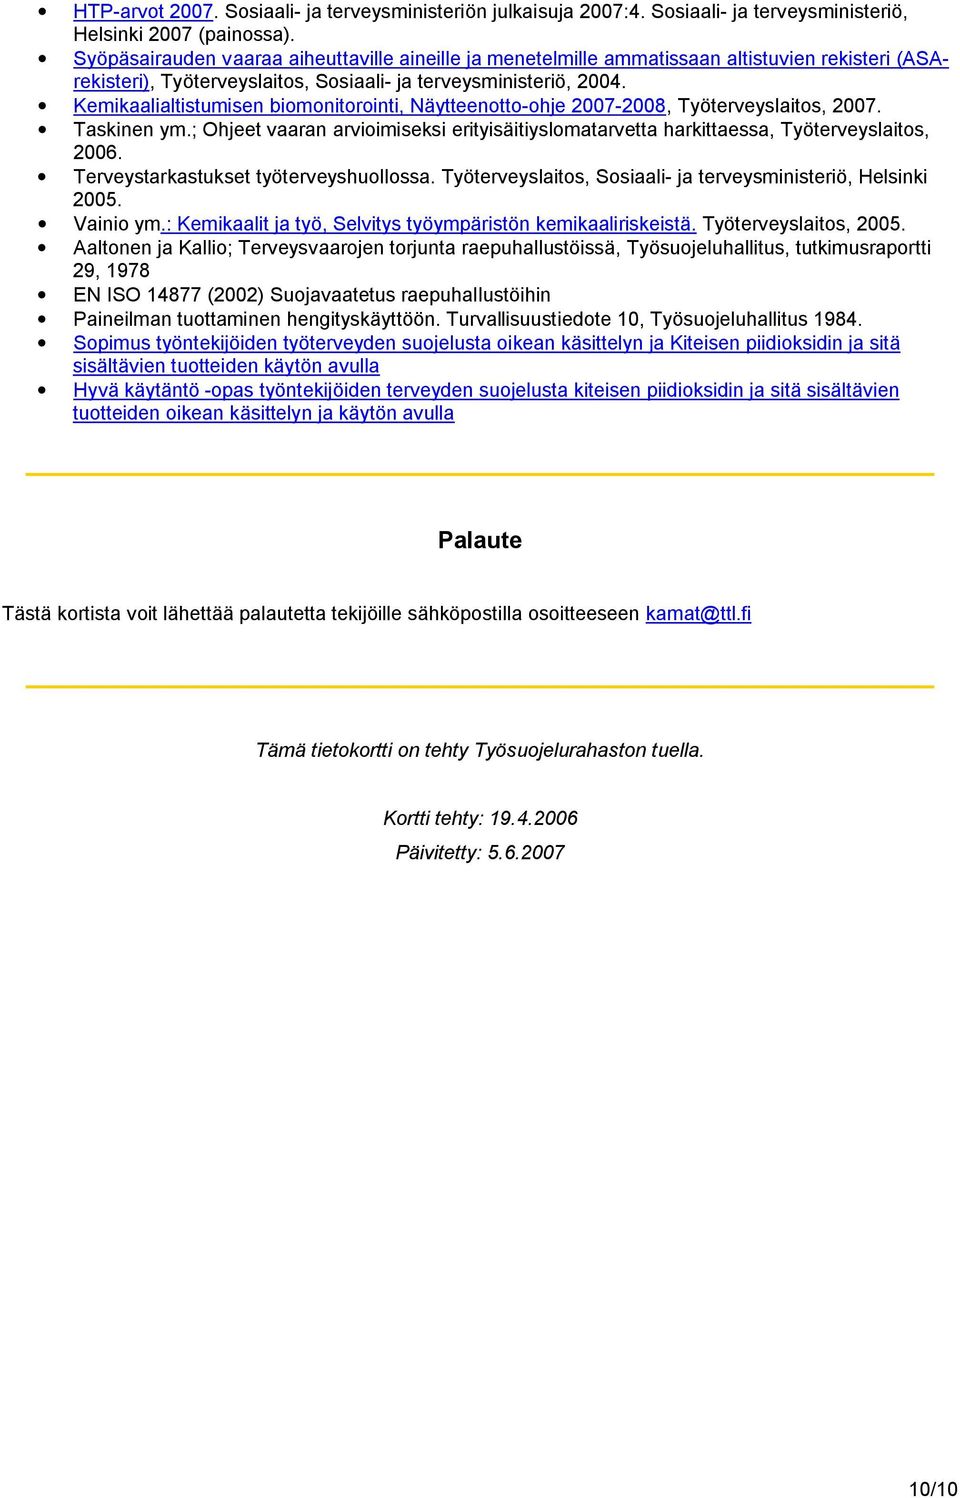 Kemikaalialtistumisen biomonitorointi, Näytteenotto-ohje 2007-2008, Työterveyslaitos, 2007. Taskinen ym.; Ohjeet vaaran arvioimiseksi erityisäitiyslomatarvetta harkittaessa, Työterveyslaitos, 2006.